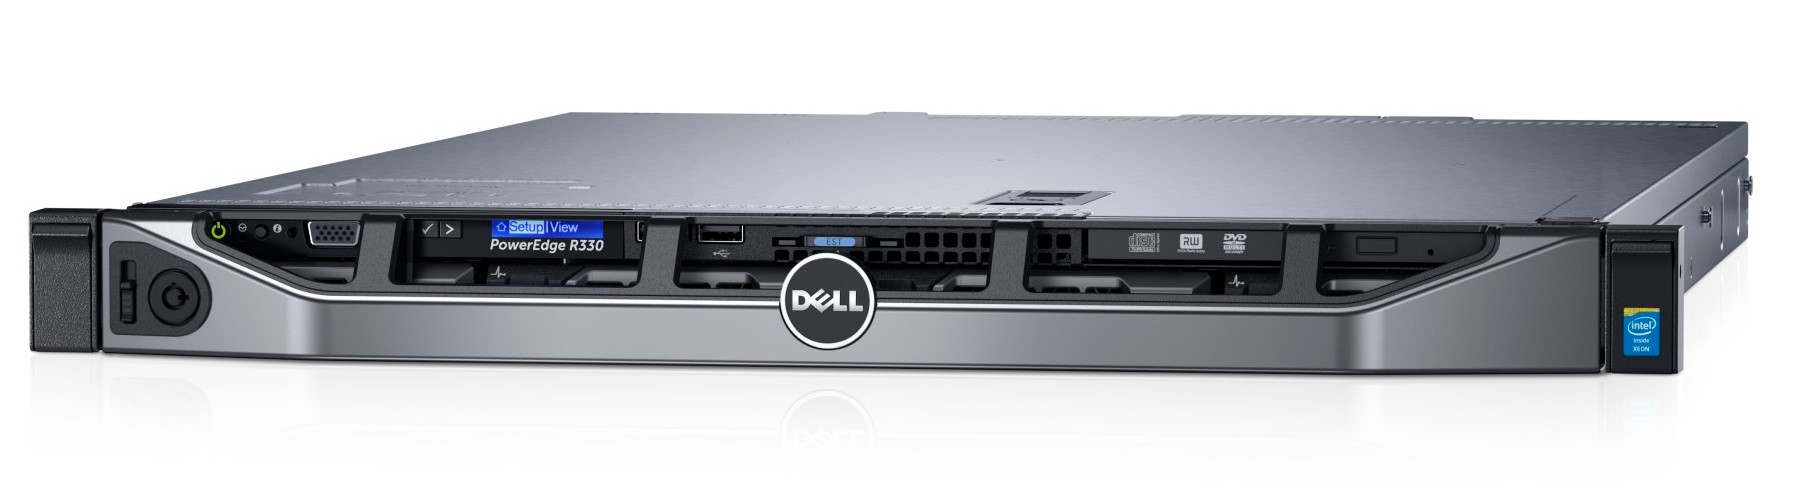 Сервер Dell PowerEdge R330 E3-1225v5 (3.3GHz, 4C), 8GB (1x8GB) UDIMM, No HDD (up to 4x3.5"), PERC H330, DVD+/-RW, Broadcom 5720 DP 1Gb LOM, iDRAC8 Ent